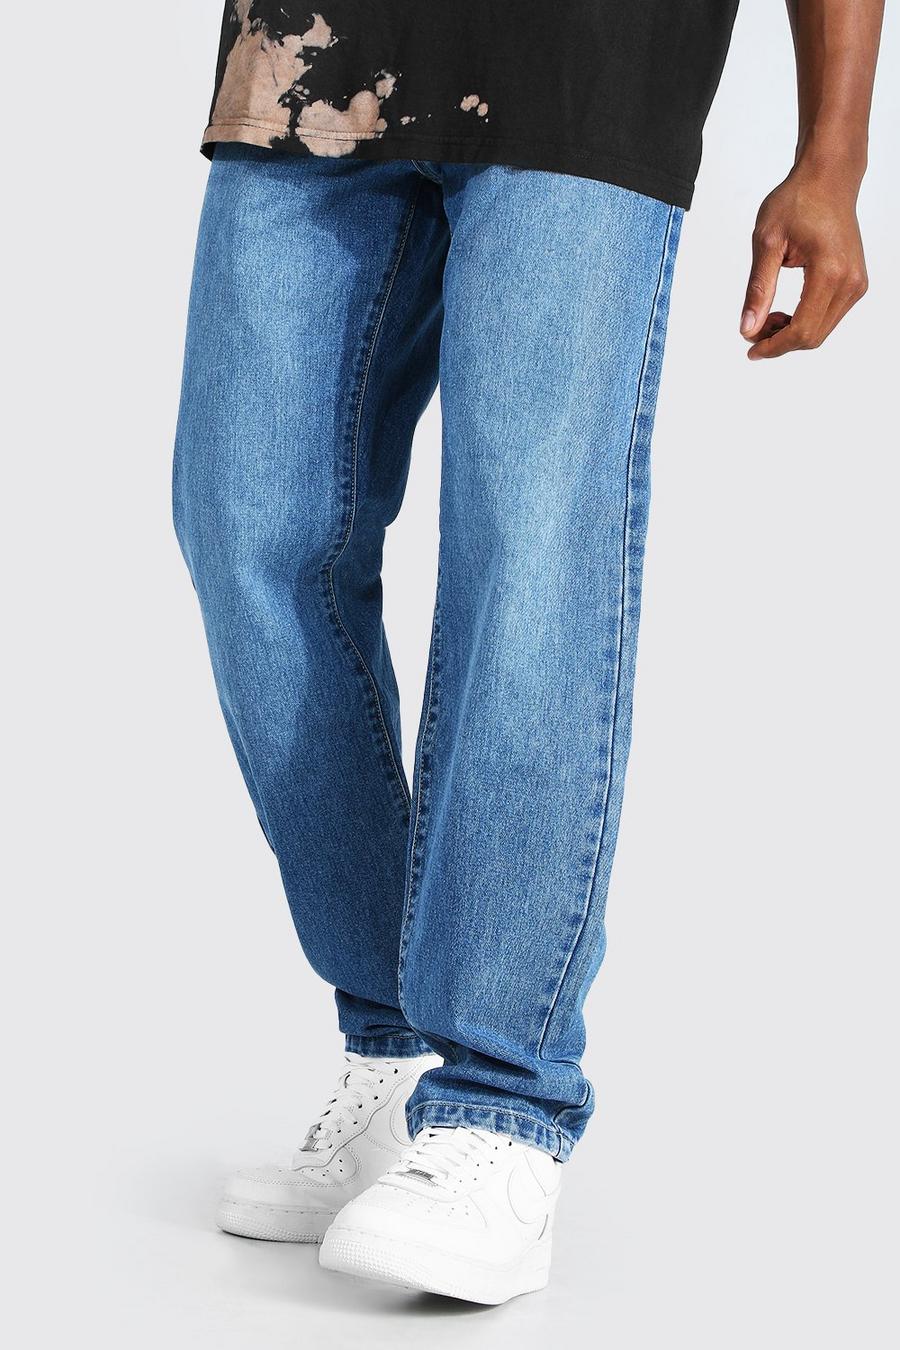 כחול ביניים ג'ינס קשיח בגזרה משוחררת